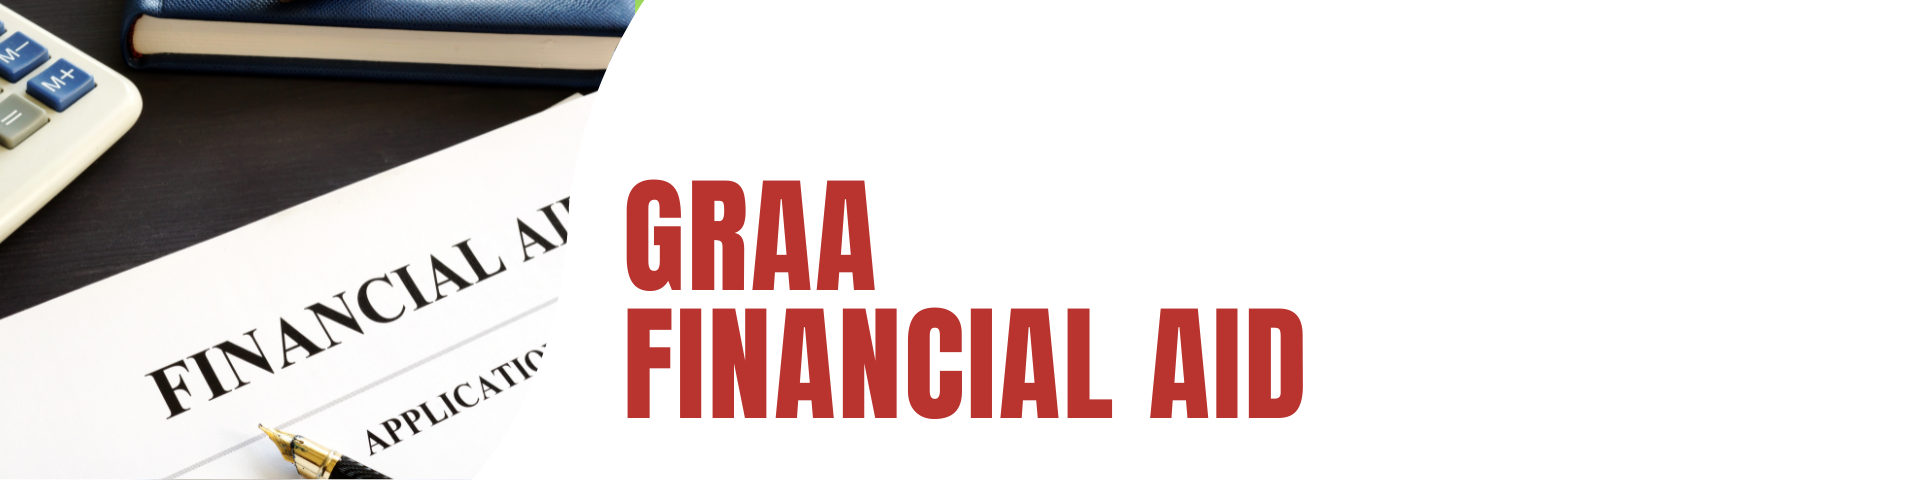 GRAA Finacial Aid